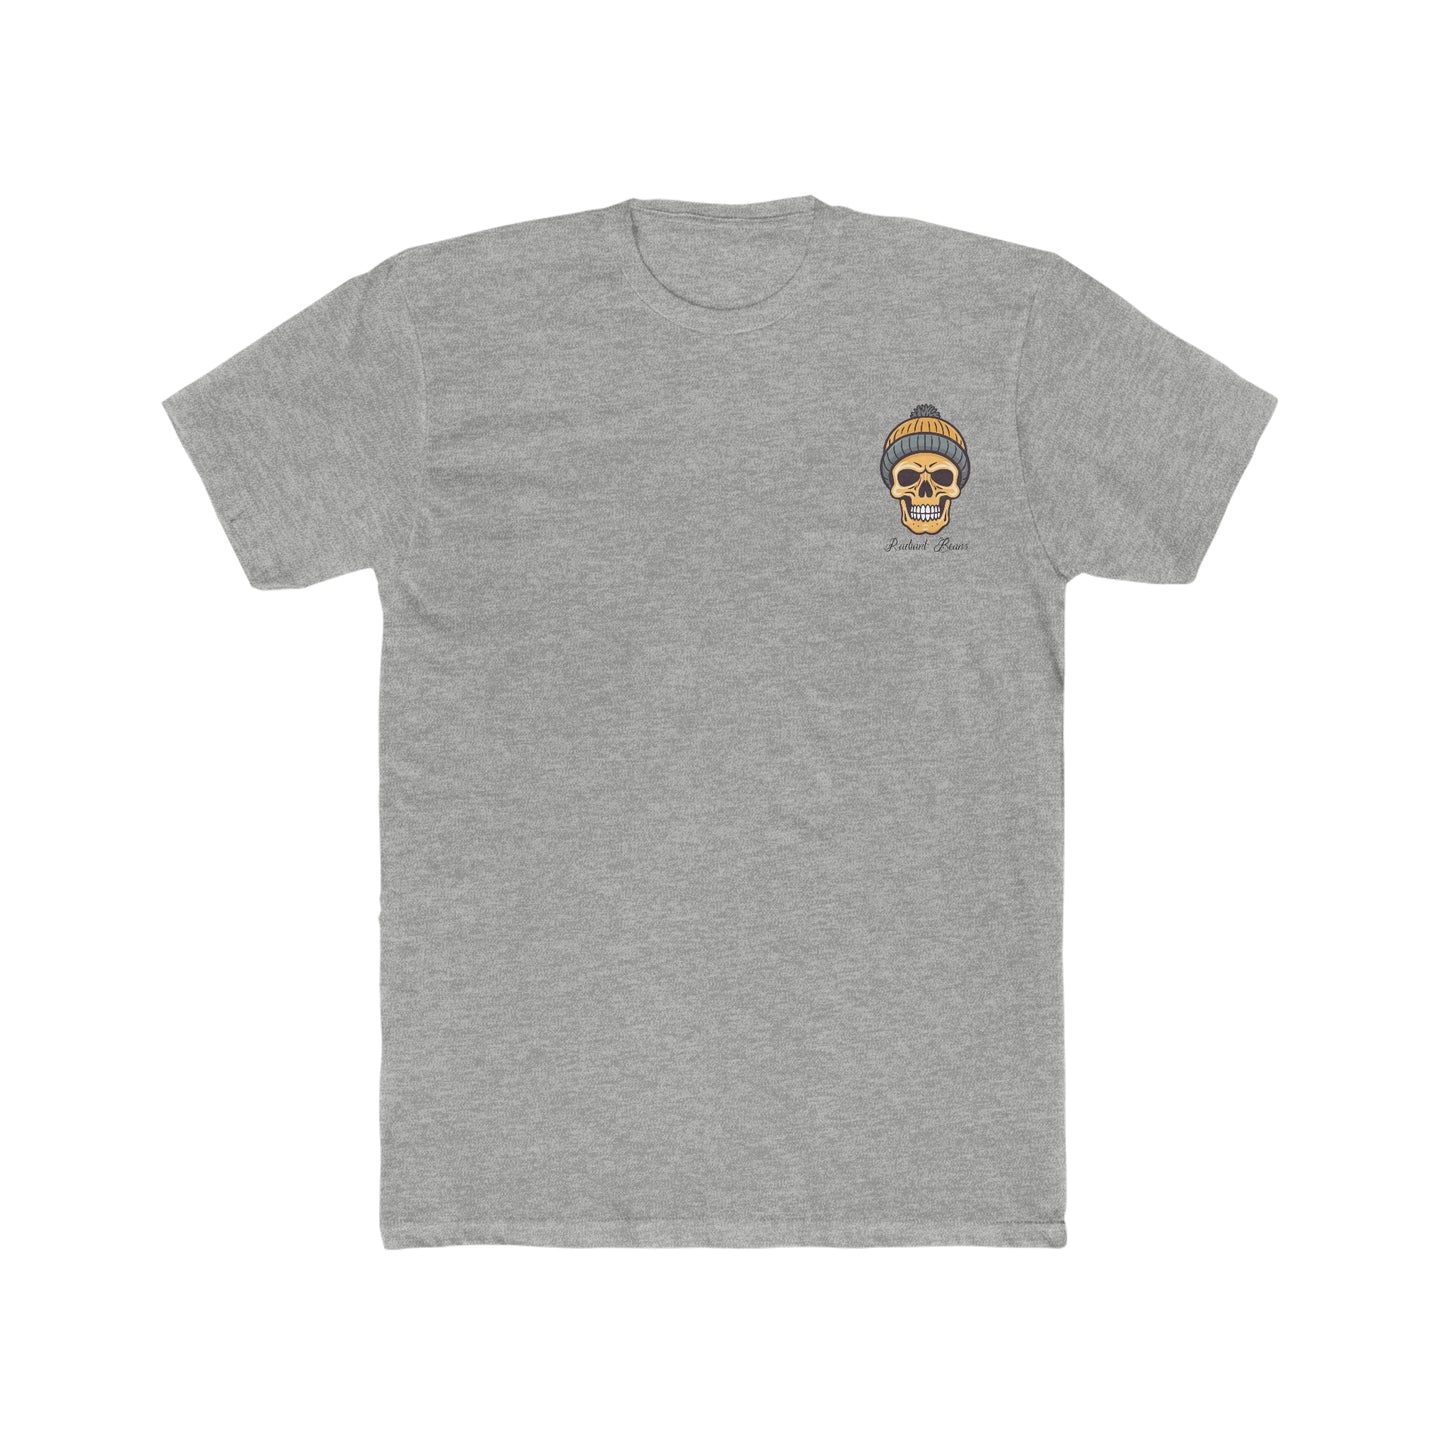 Knit Fast, Die Warm - Gold - Men's T-Shirt